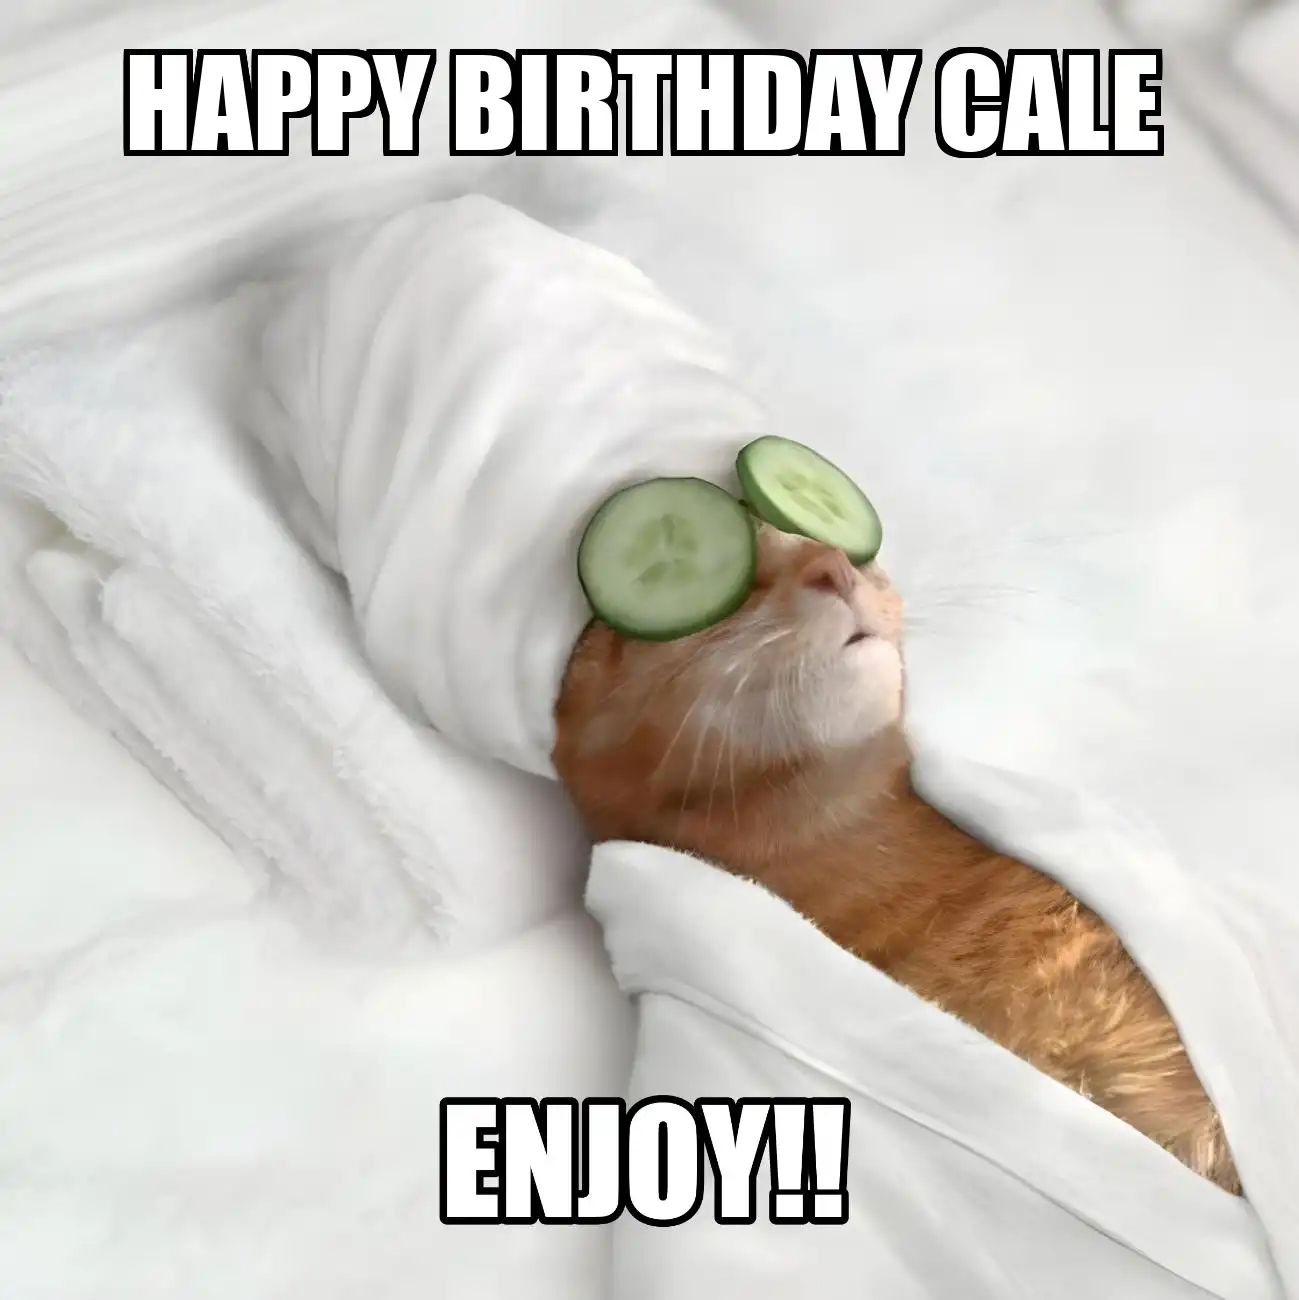 Happy Birthday Cale Enjoy Cat Meme